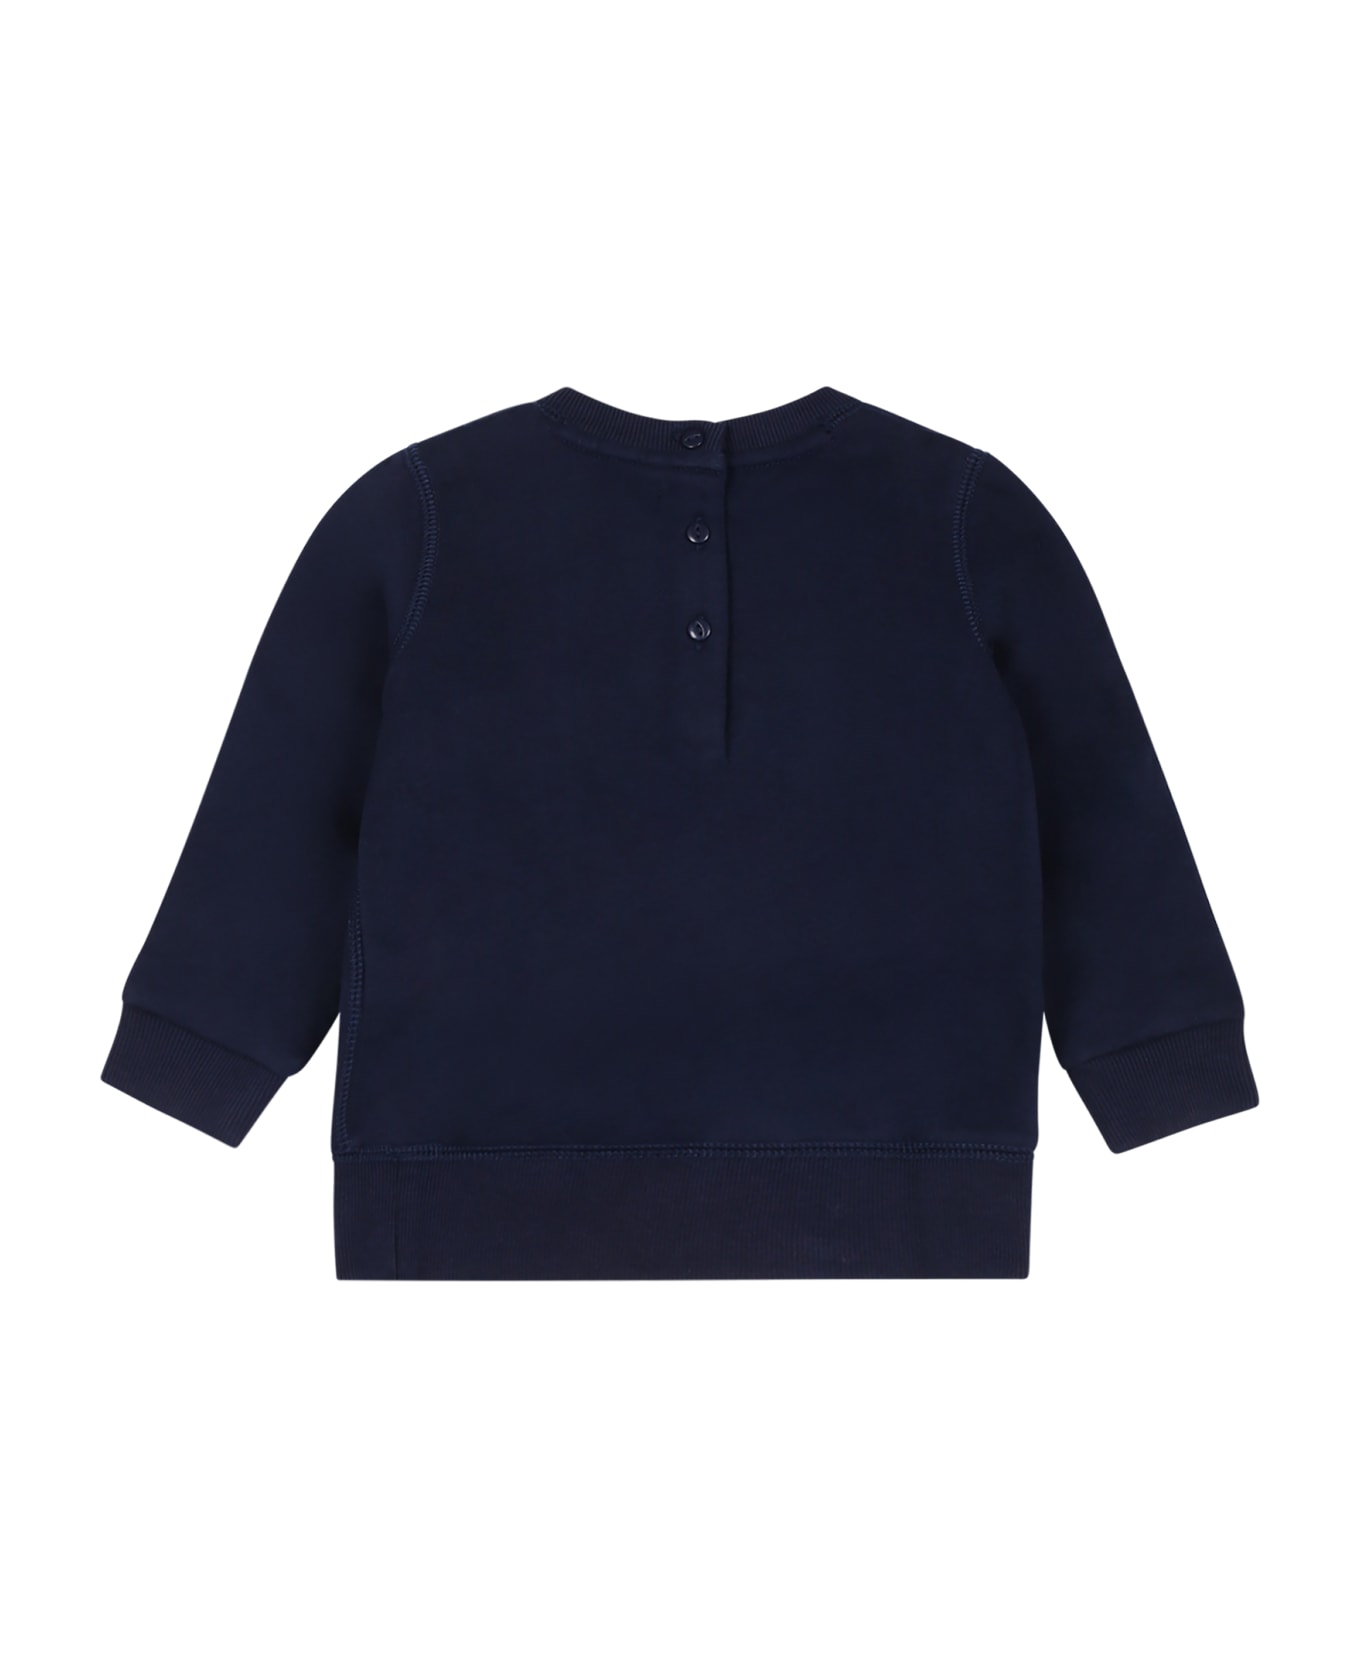 Ralph Lauren Sweatshirt Bleu For Baby Girl With Bear - Blue